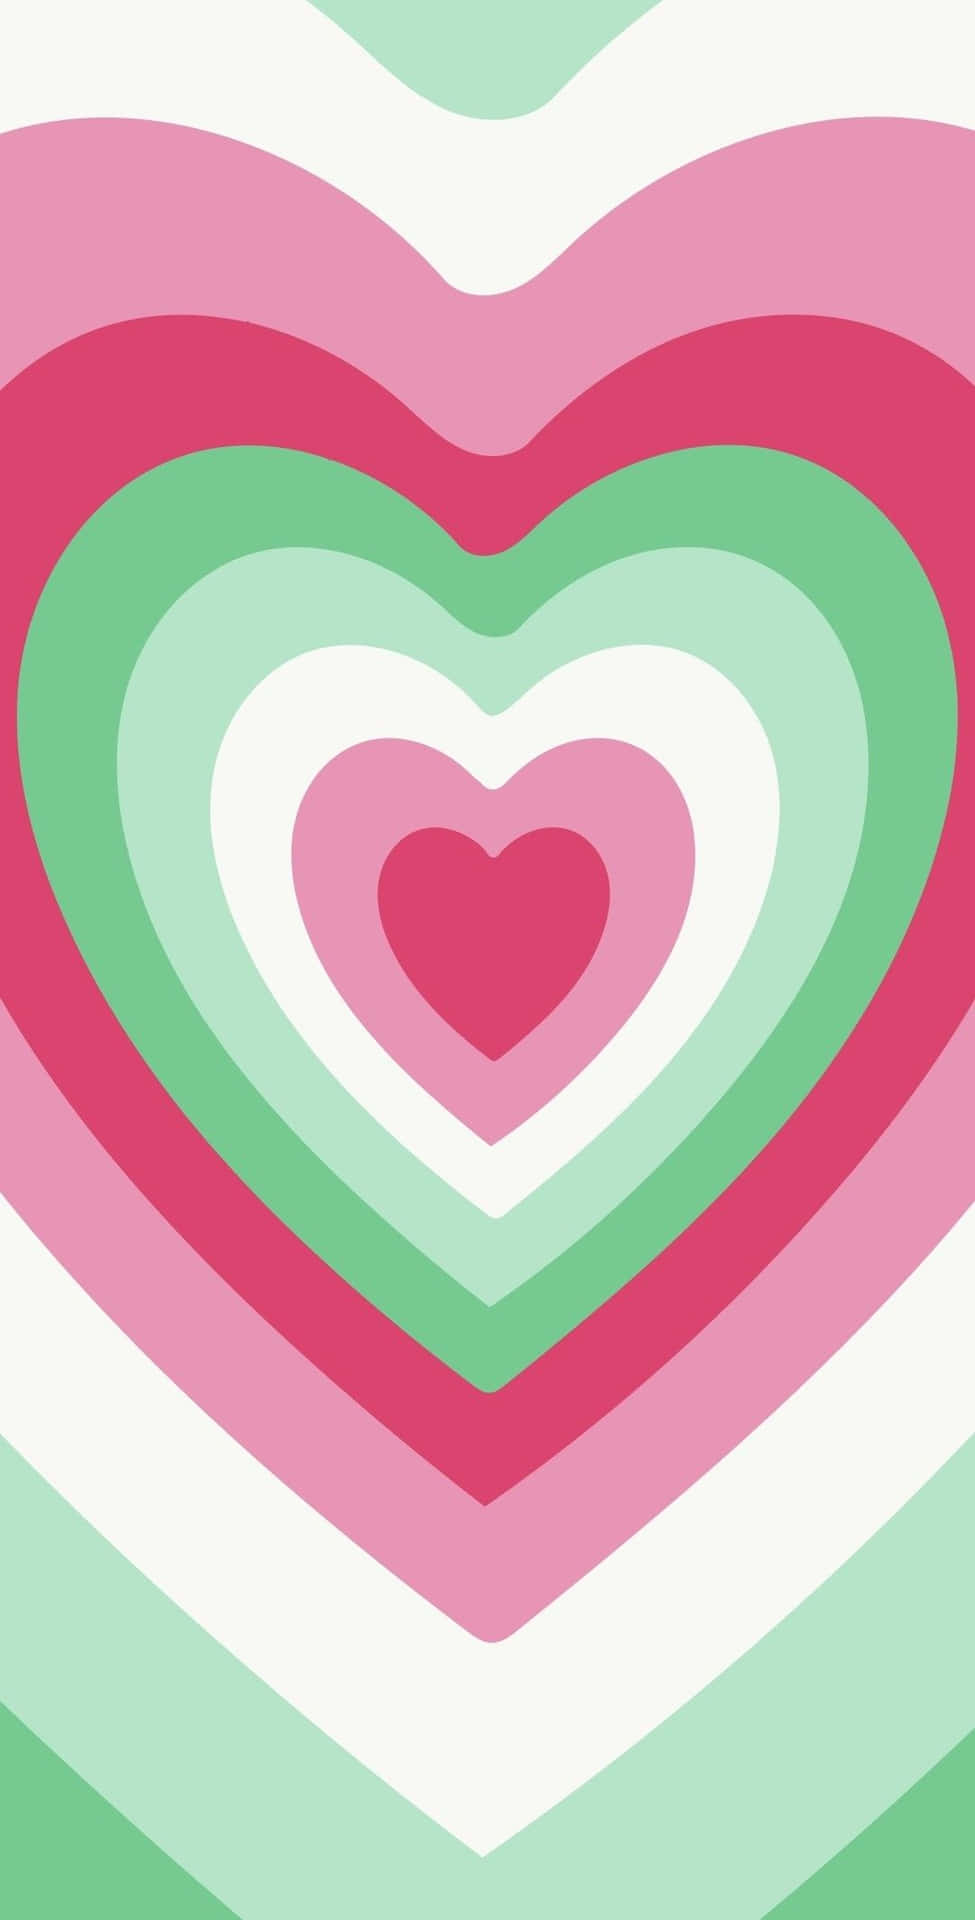 Et cool billede af fire menthol grønne hjerter, der overlapper på en sjov måde. Wallpaper